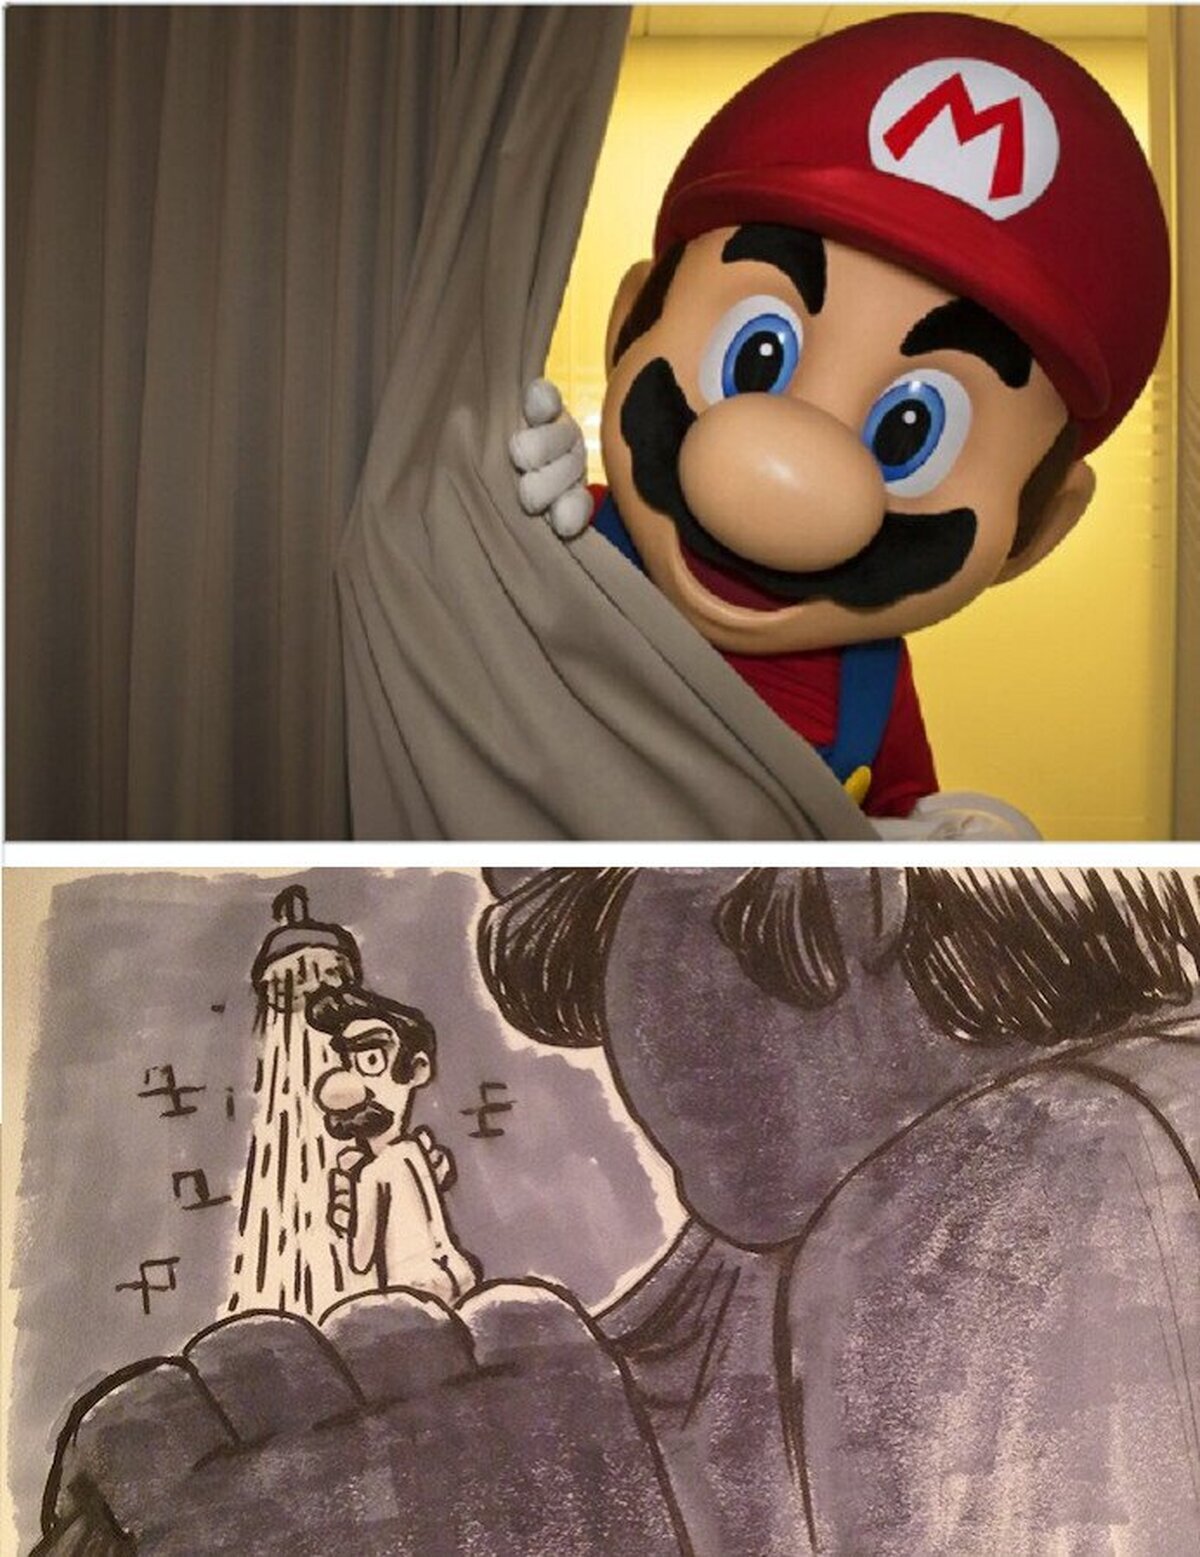 ¿A quien espías, Mario?